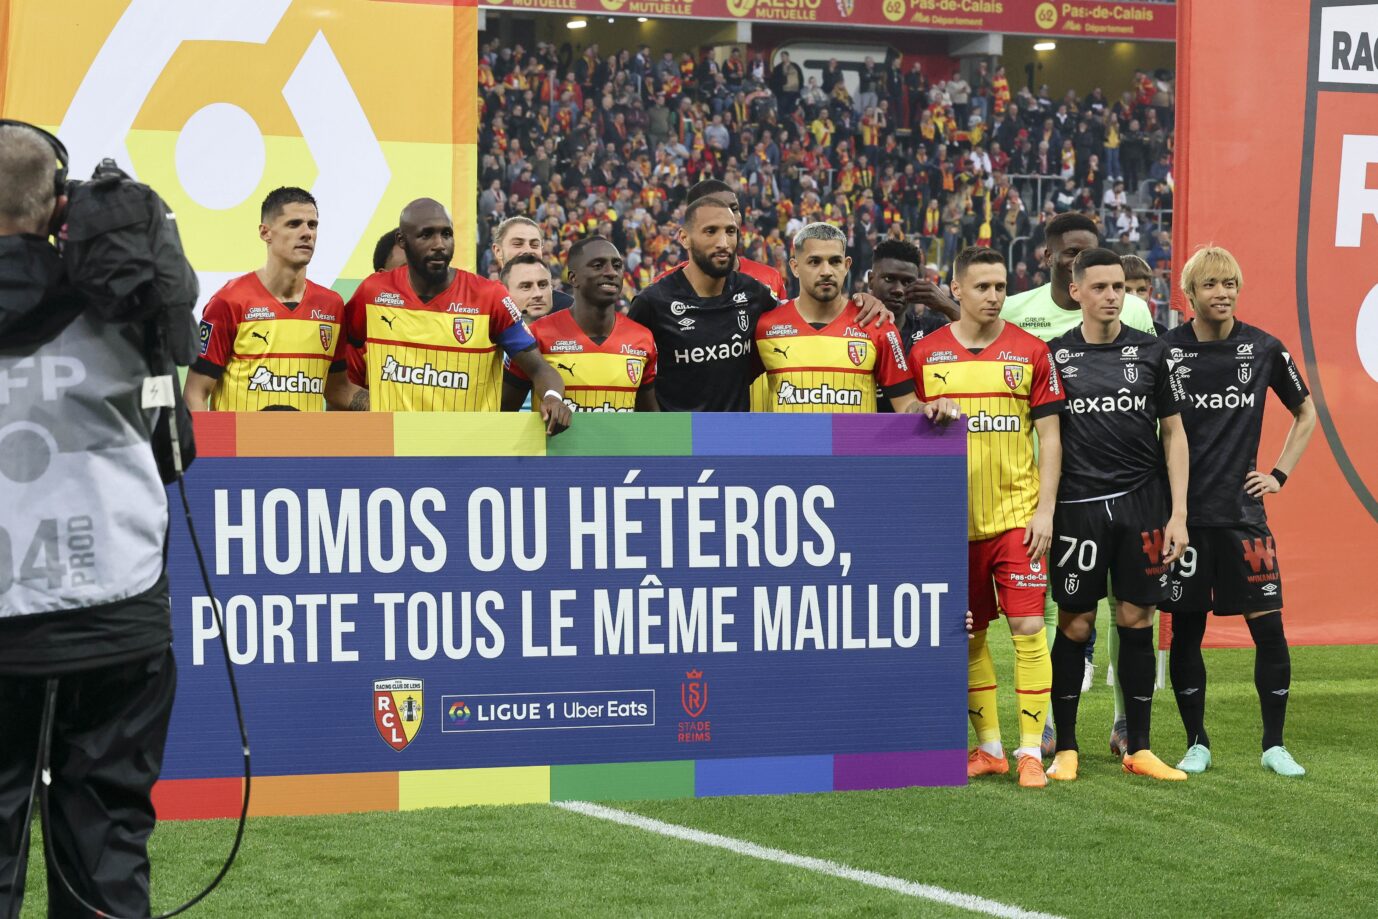 „Homos oder Heteros, wir tragen alle das gleiche Trikot", ist das Motto der derzeitigen Regenbogen-Kampagne im französischen Fußball Foto: picture alliance / DPPI media | JEAN CATUFFE